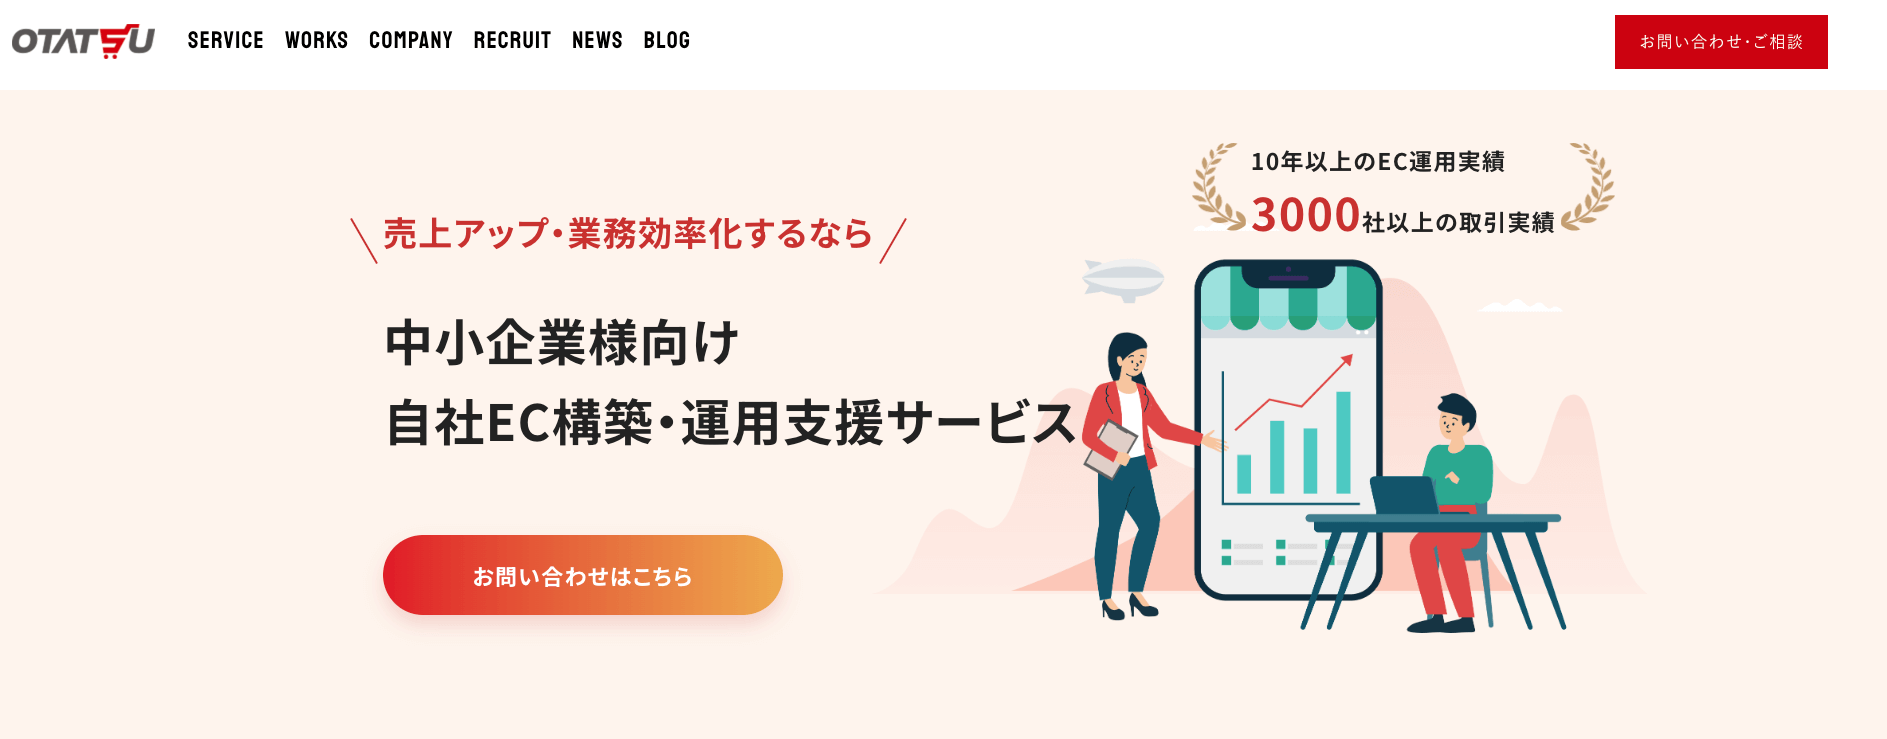 株式会社オタツーの公式サイト